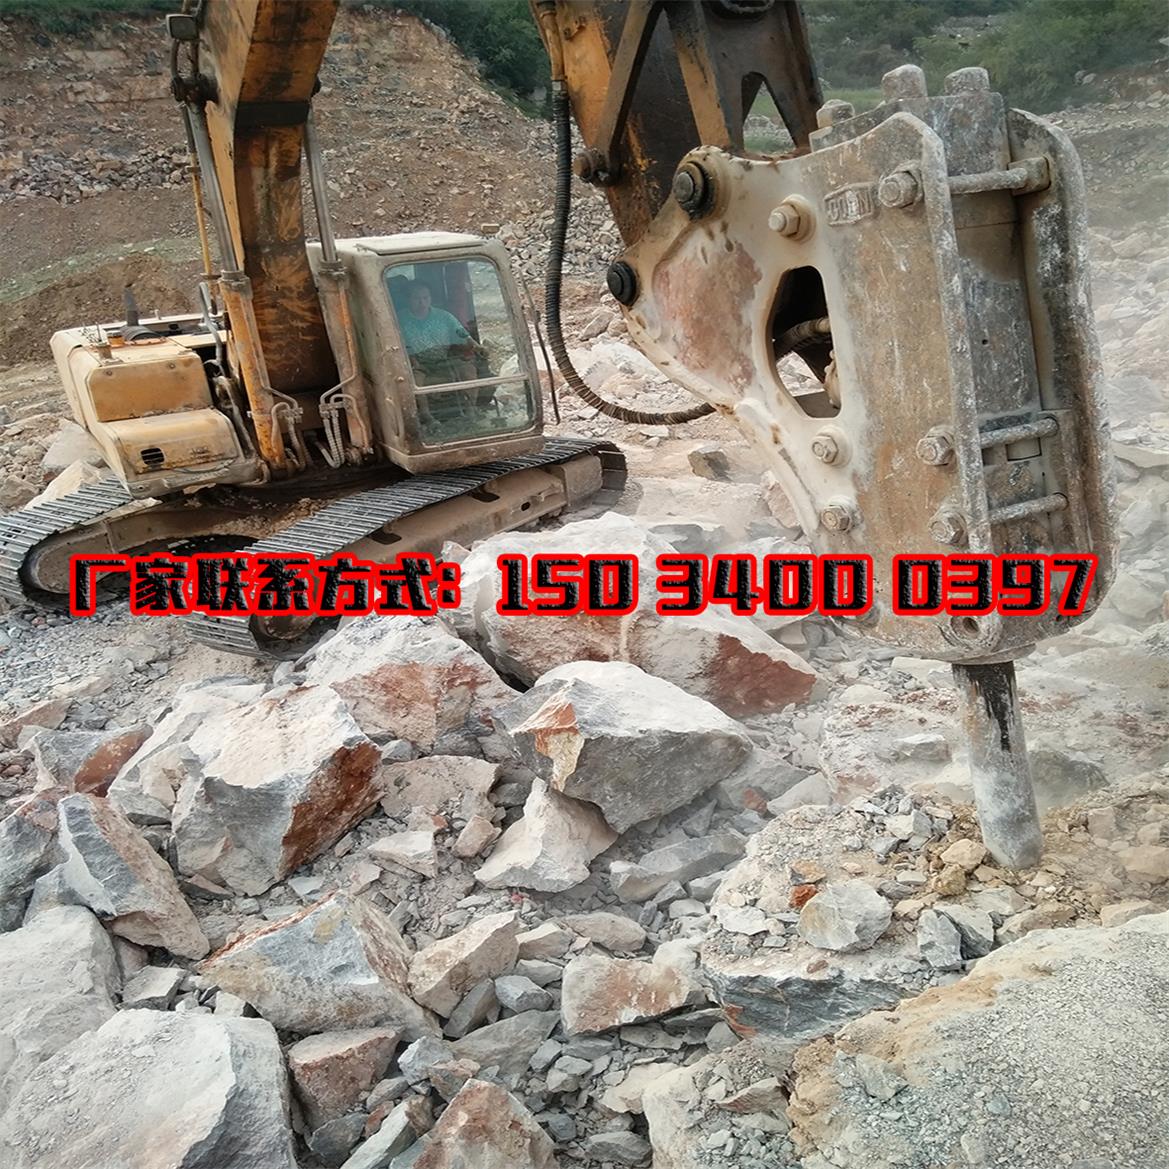 哈密地区石头裂石机维修